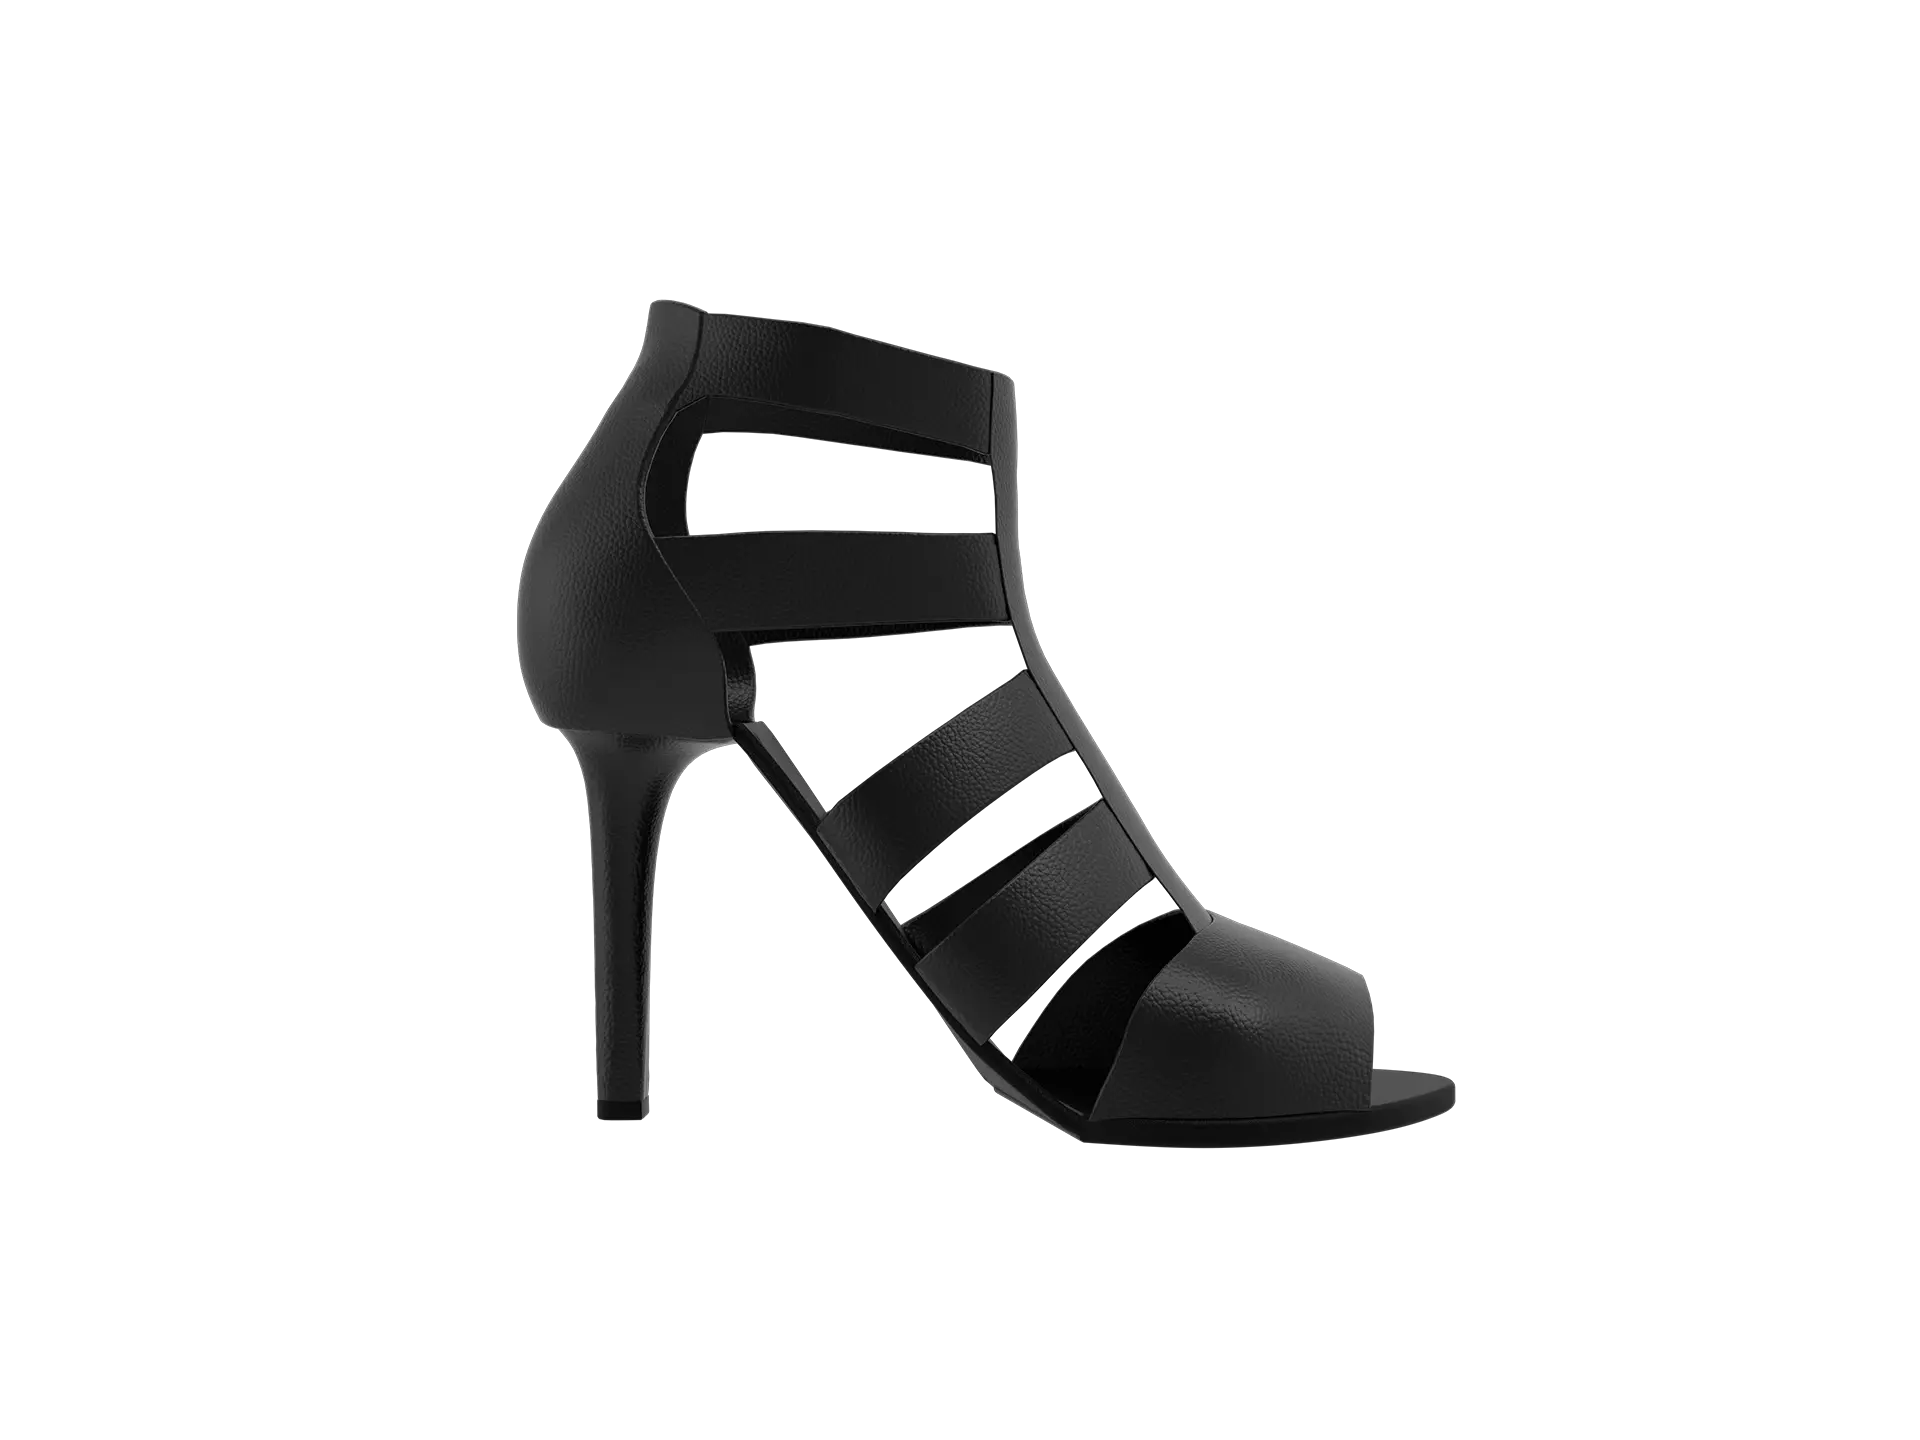 un-real-zampolini-biffi-gentili_virtual-fashion-calzature-scarpe-suole_9